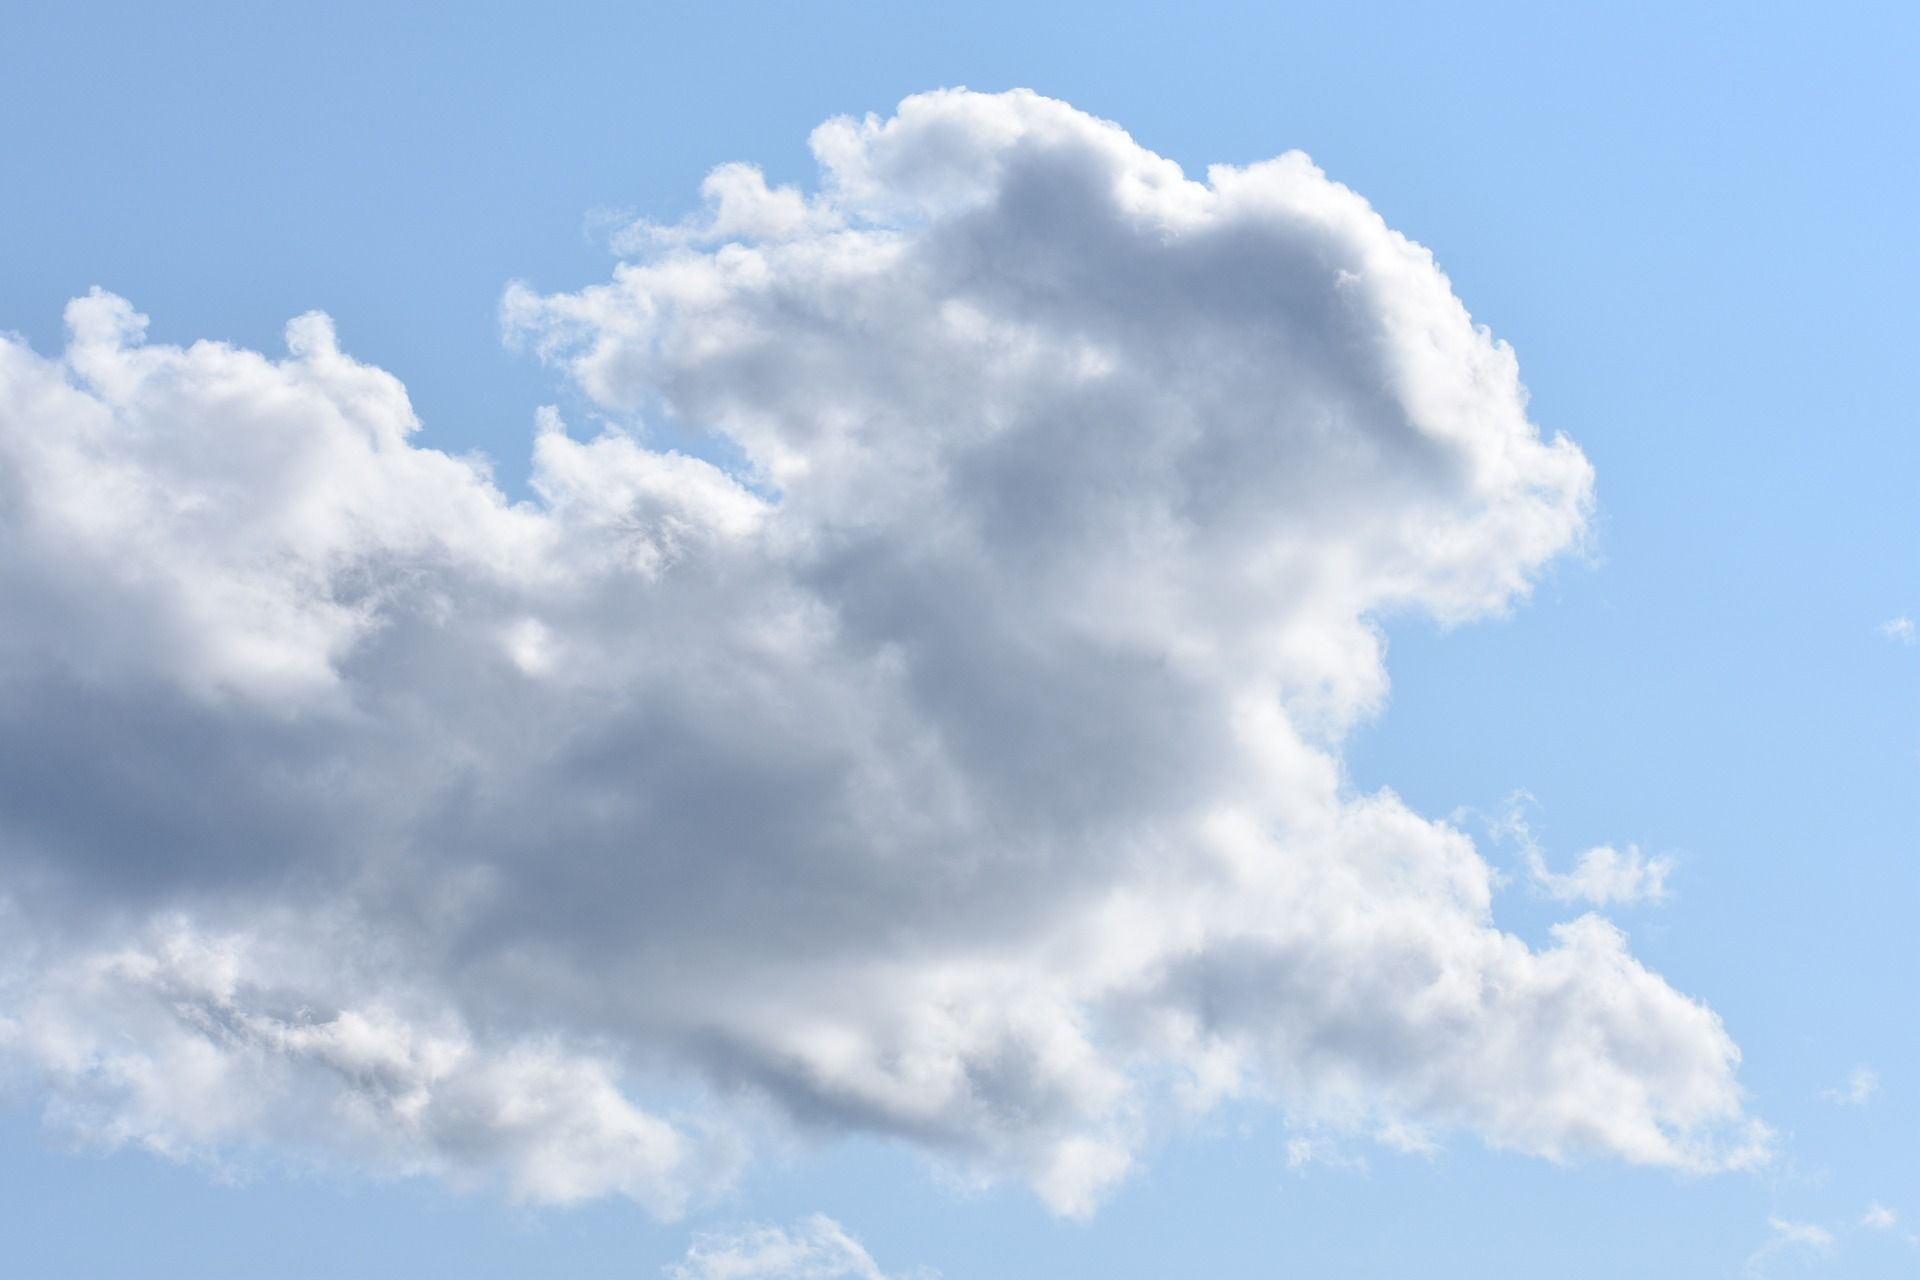 un nuage dans le ciel comme un lapin, Image par fredericklove de https://pixabay.com/fr/photos/lapin-des-nuages-p%C3%A2ques-id%C3%A9e-fleur-4821146/